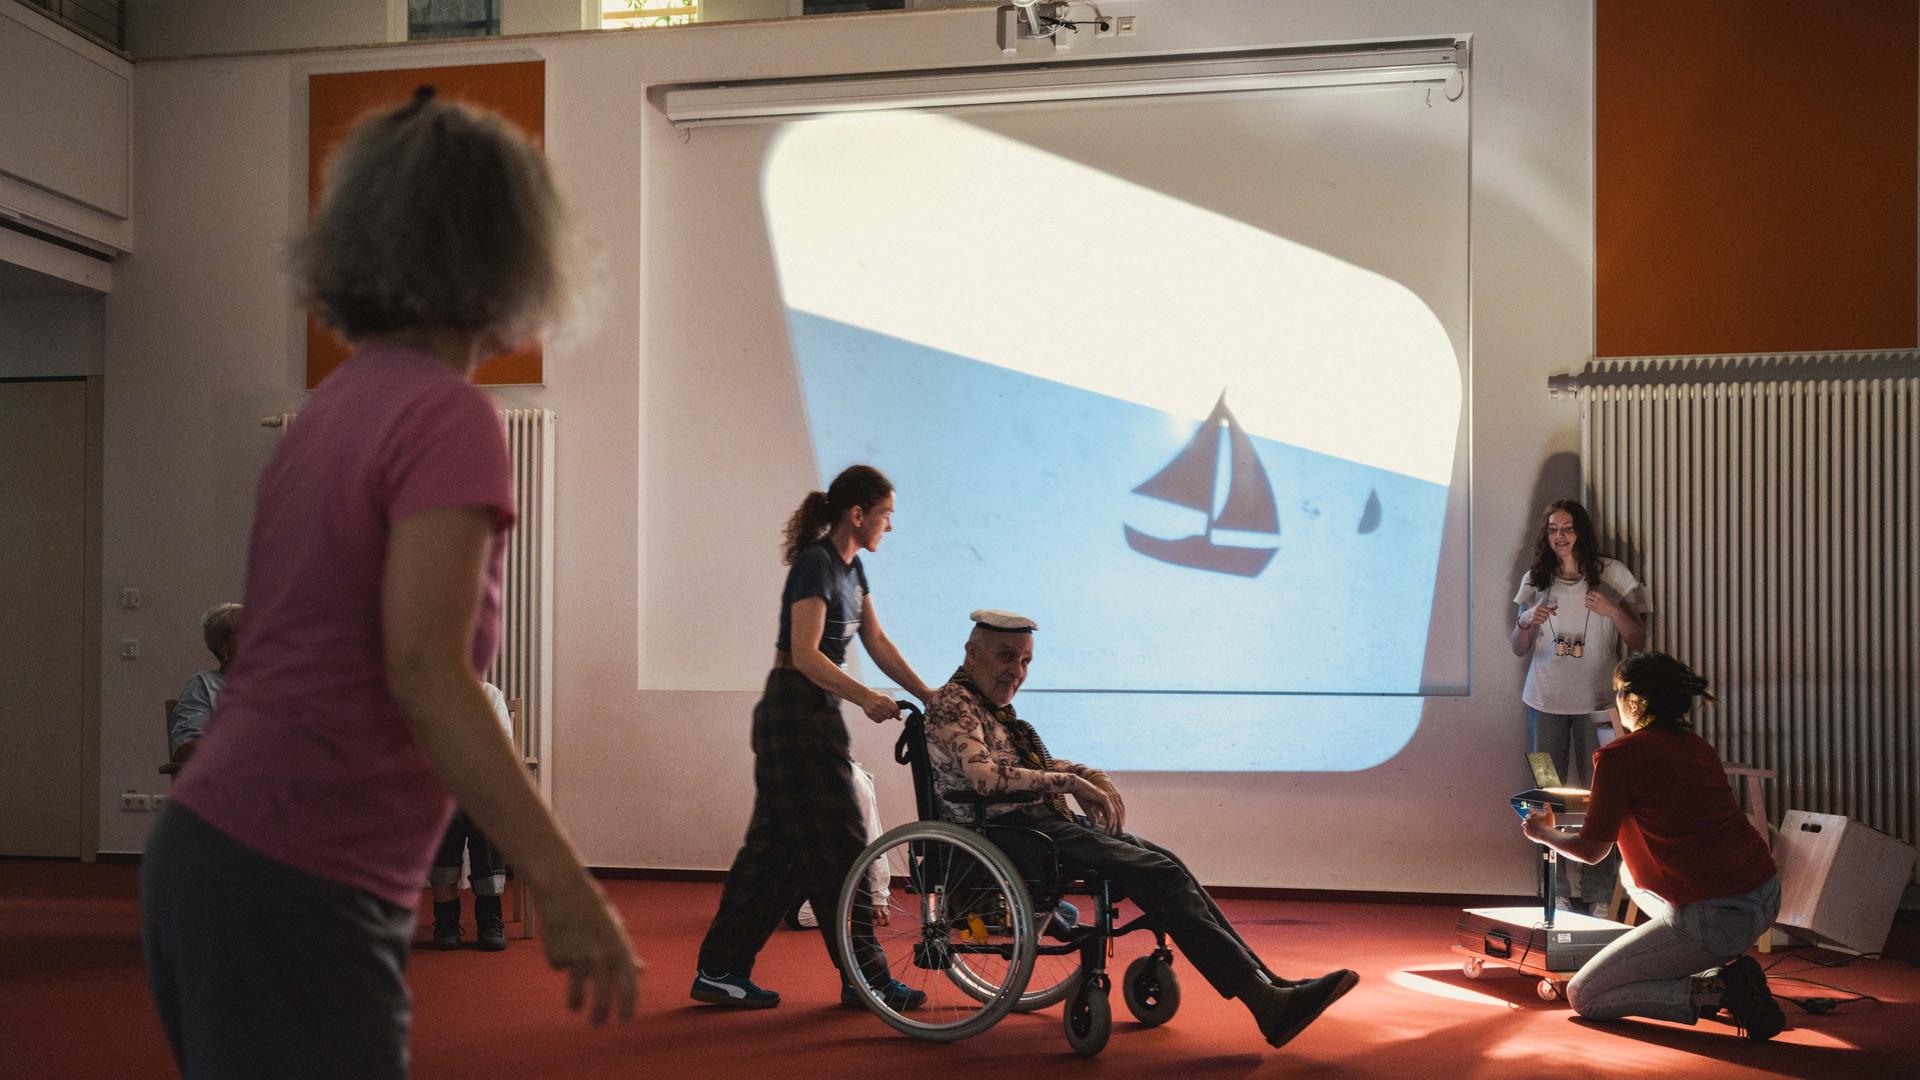 Darsteller der Theatergruppe "Papillon" spielen auf einer Bühne vor einem Hintergrund mit Schiff, ein Schauspieler wird im Rollstuhl gefahren.